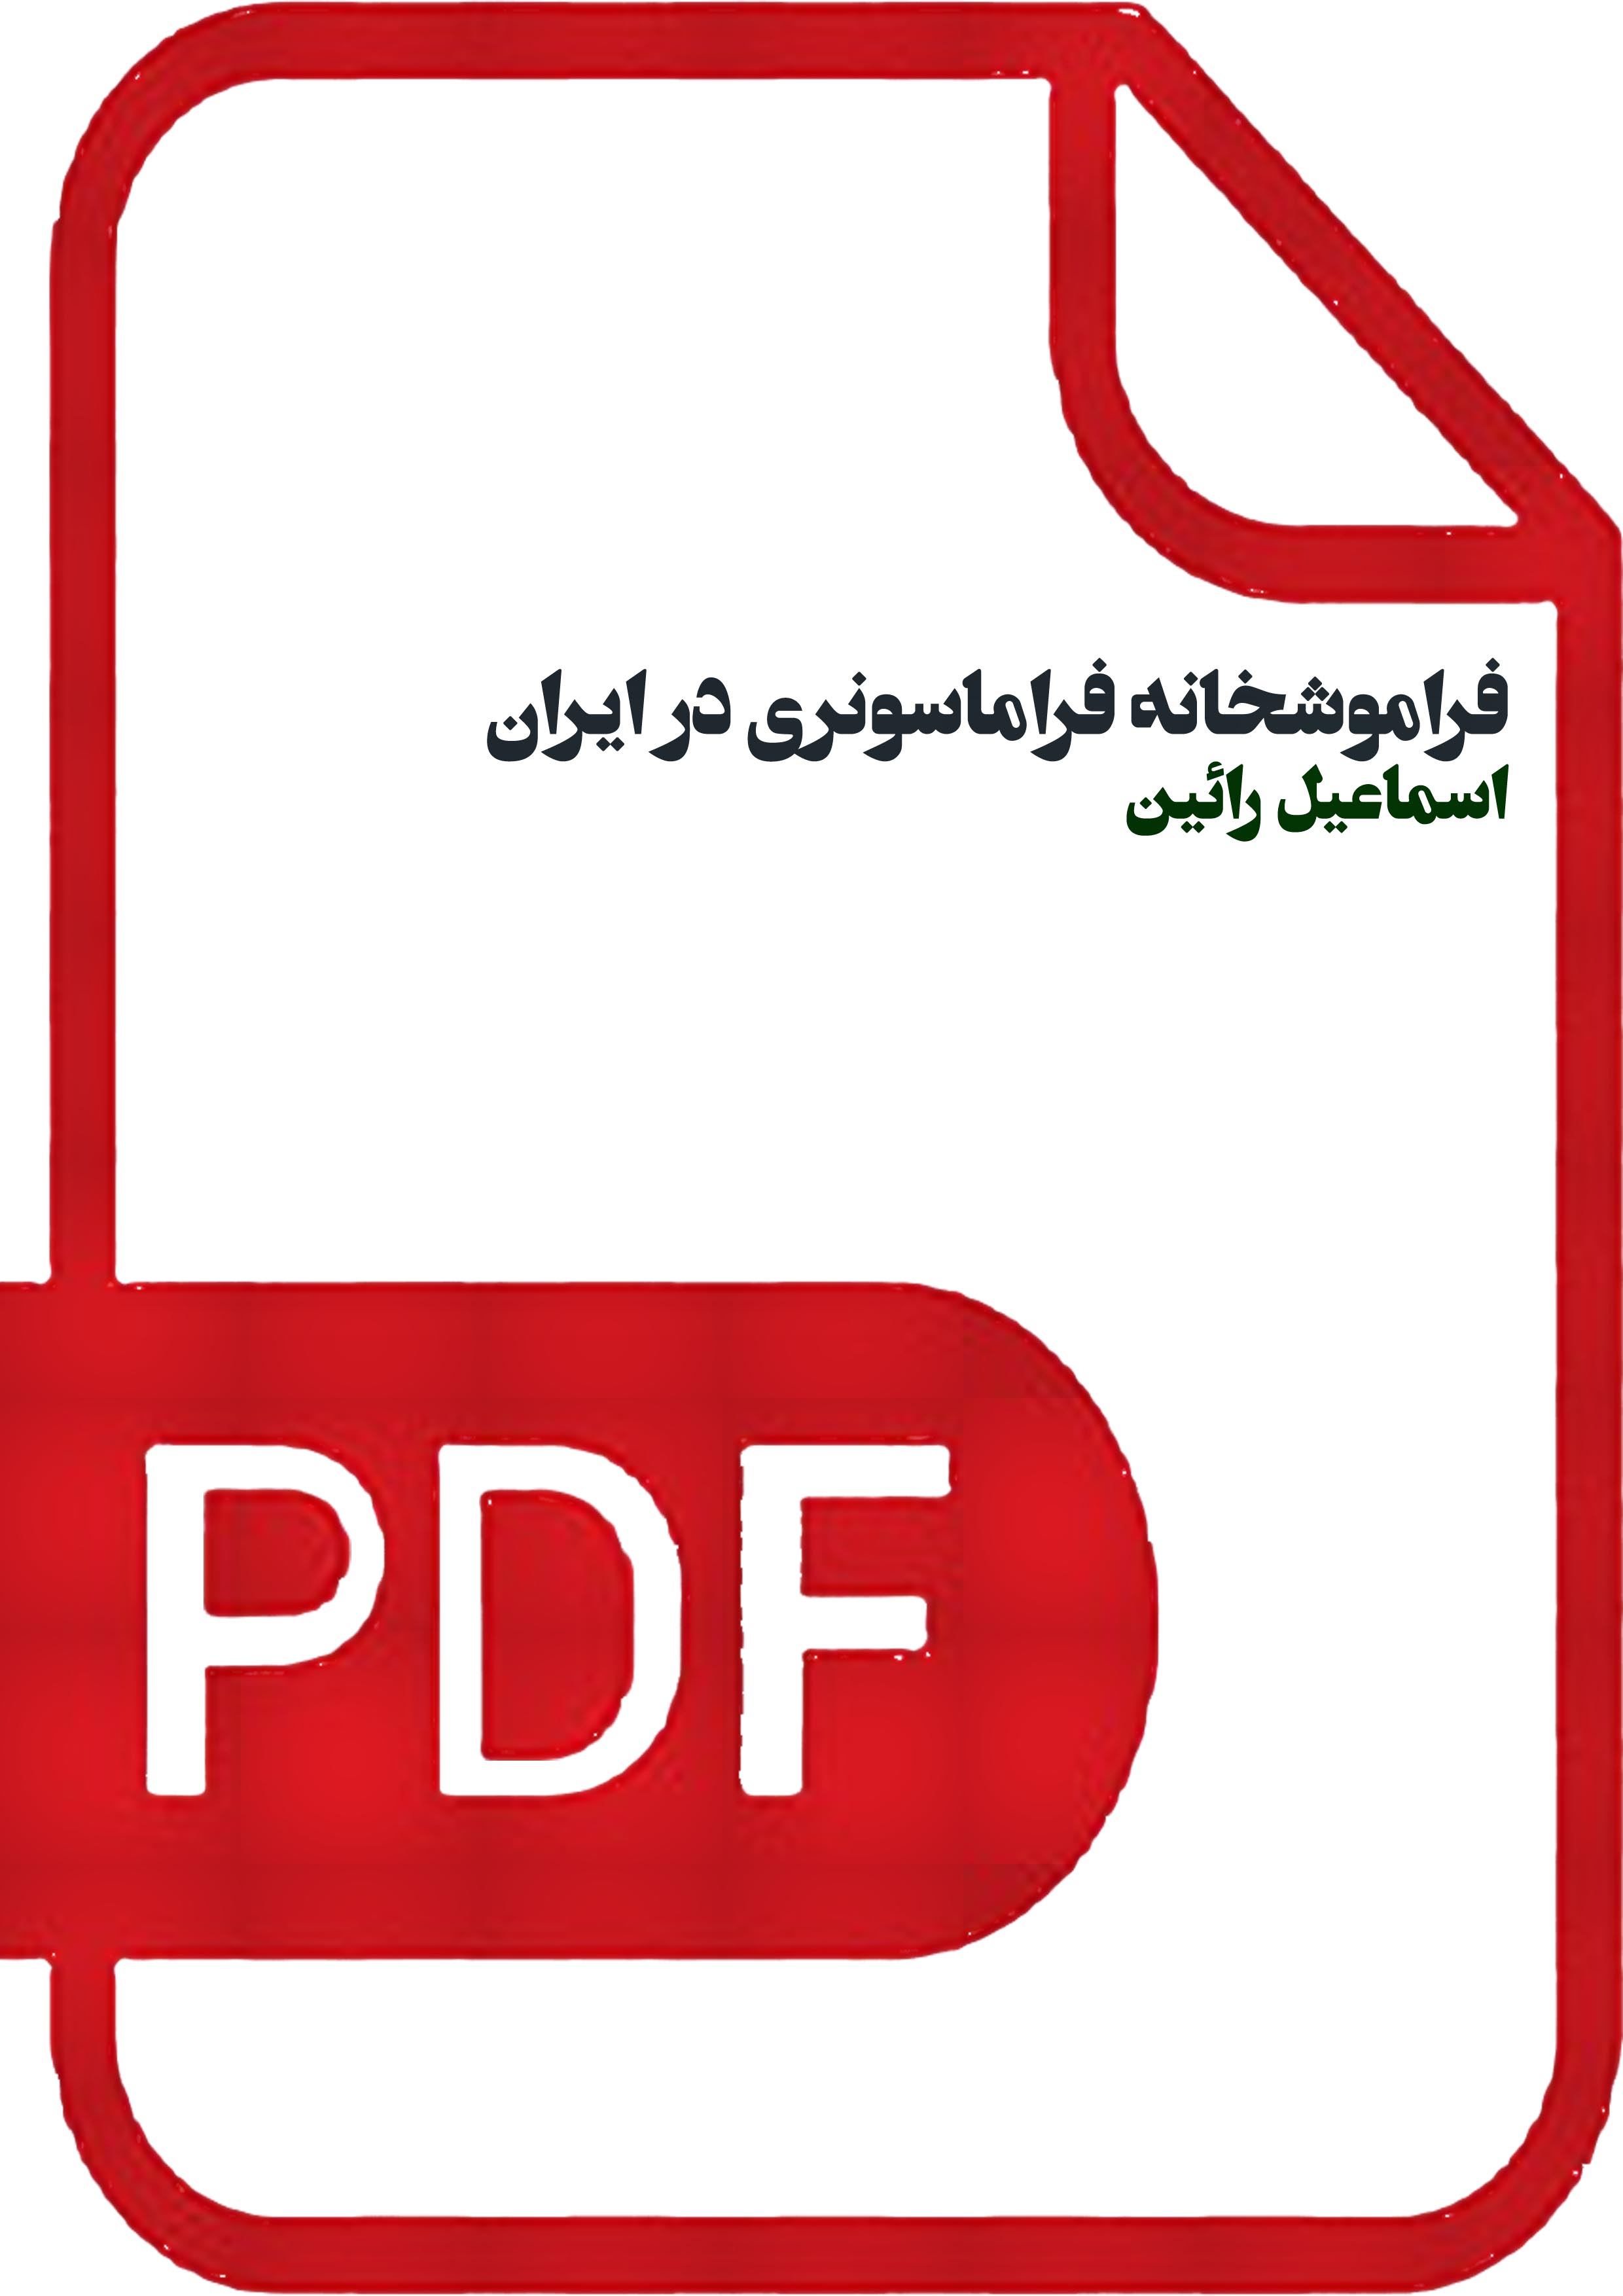 فراموشخانه فراماسونری در ایران/اسماعیل رائین